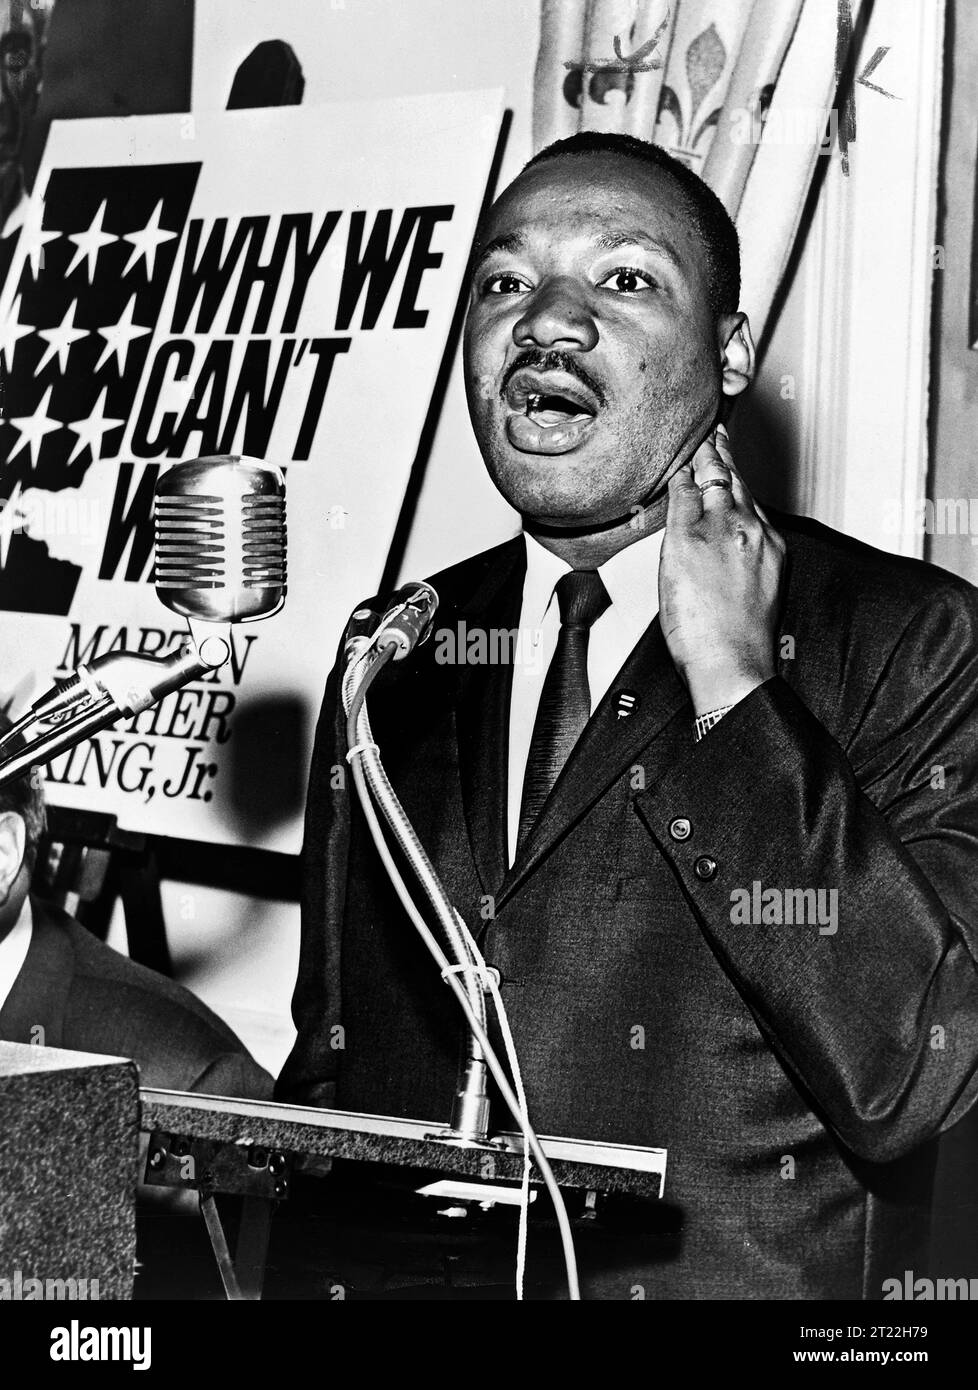 Martin Luther King Jr., ritratto a mezza lunghezza in piedi sul podio durante la conferenza stampa, New York City, New York, USA, Walter Albertin, New York World-Telegram e The Sun Newspaper Photography Collection, 8 giugno 1964 Foto Stock